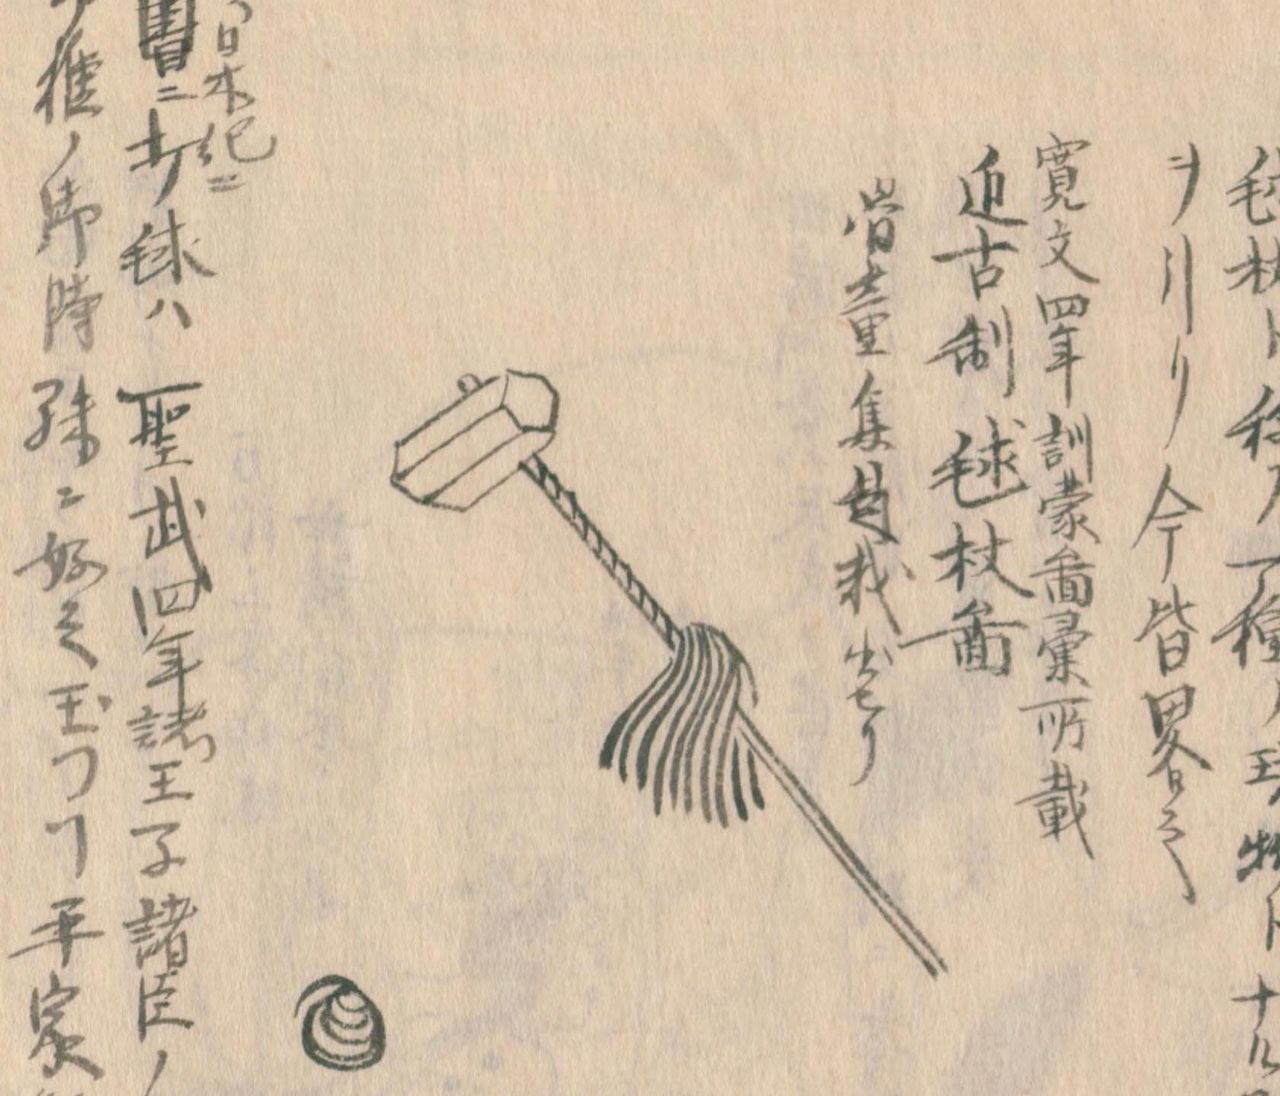 Ilustración del equipo utilizado en el gitchō en el Morisada Mankō. El autor la tomó de la enciclopedia Kinmōzui, publicada en 1666. En la era Kanbun (1661-1673) los bastones lucían decoración de hilos de vistosos colores, pero conforme el juego se popularizó, la decoración fue desapareciendo.